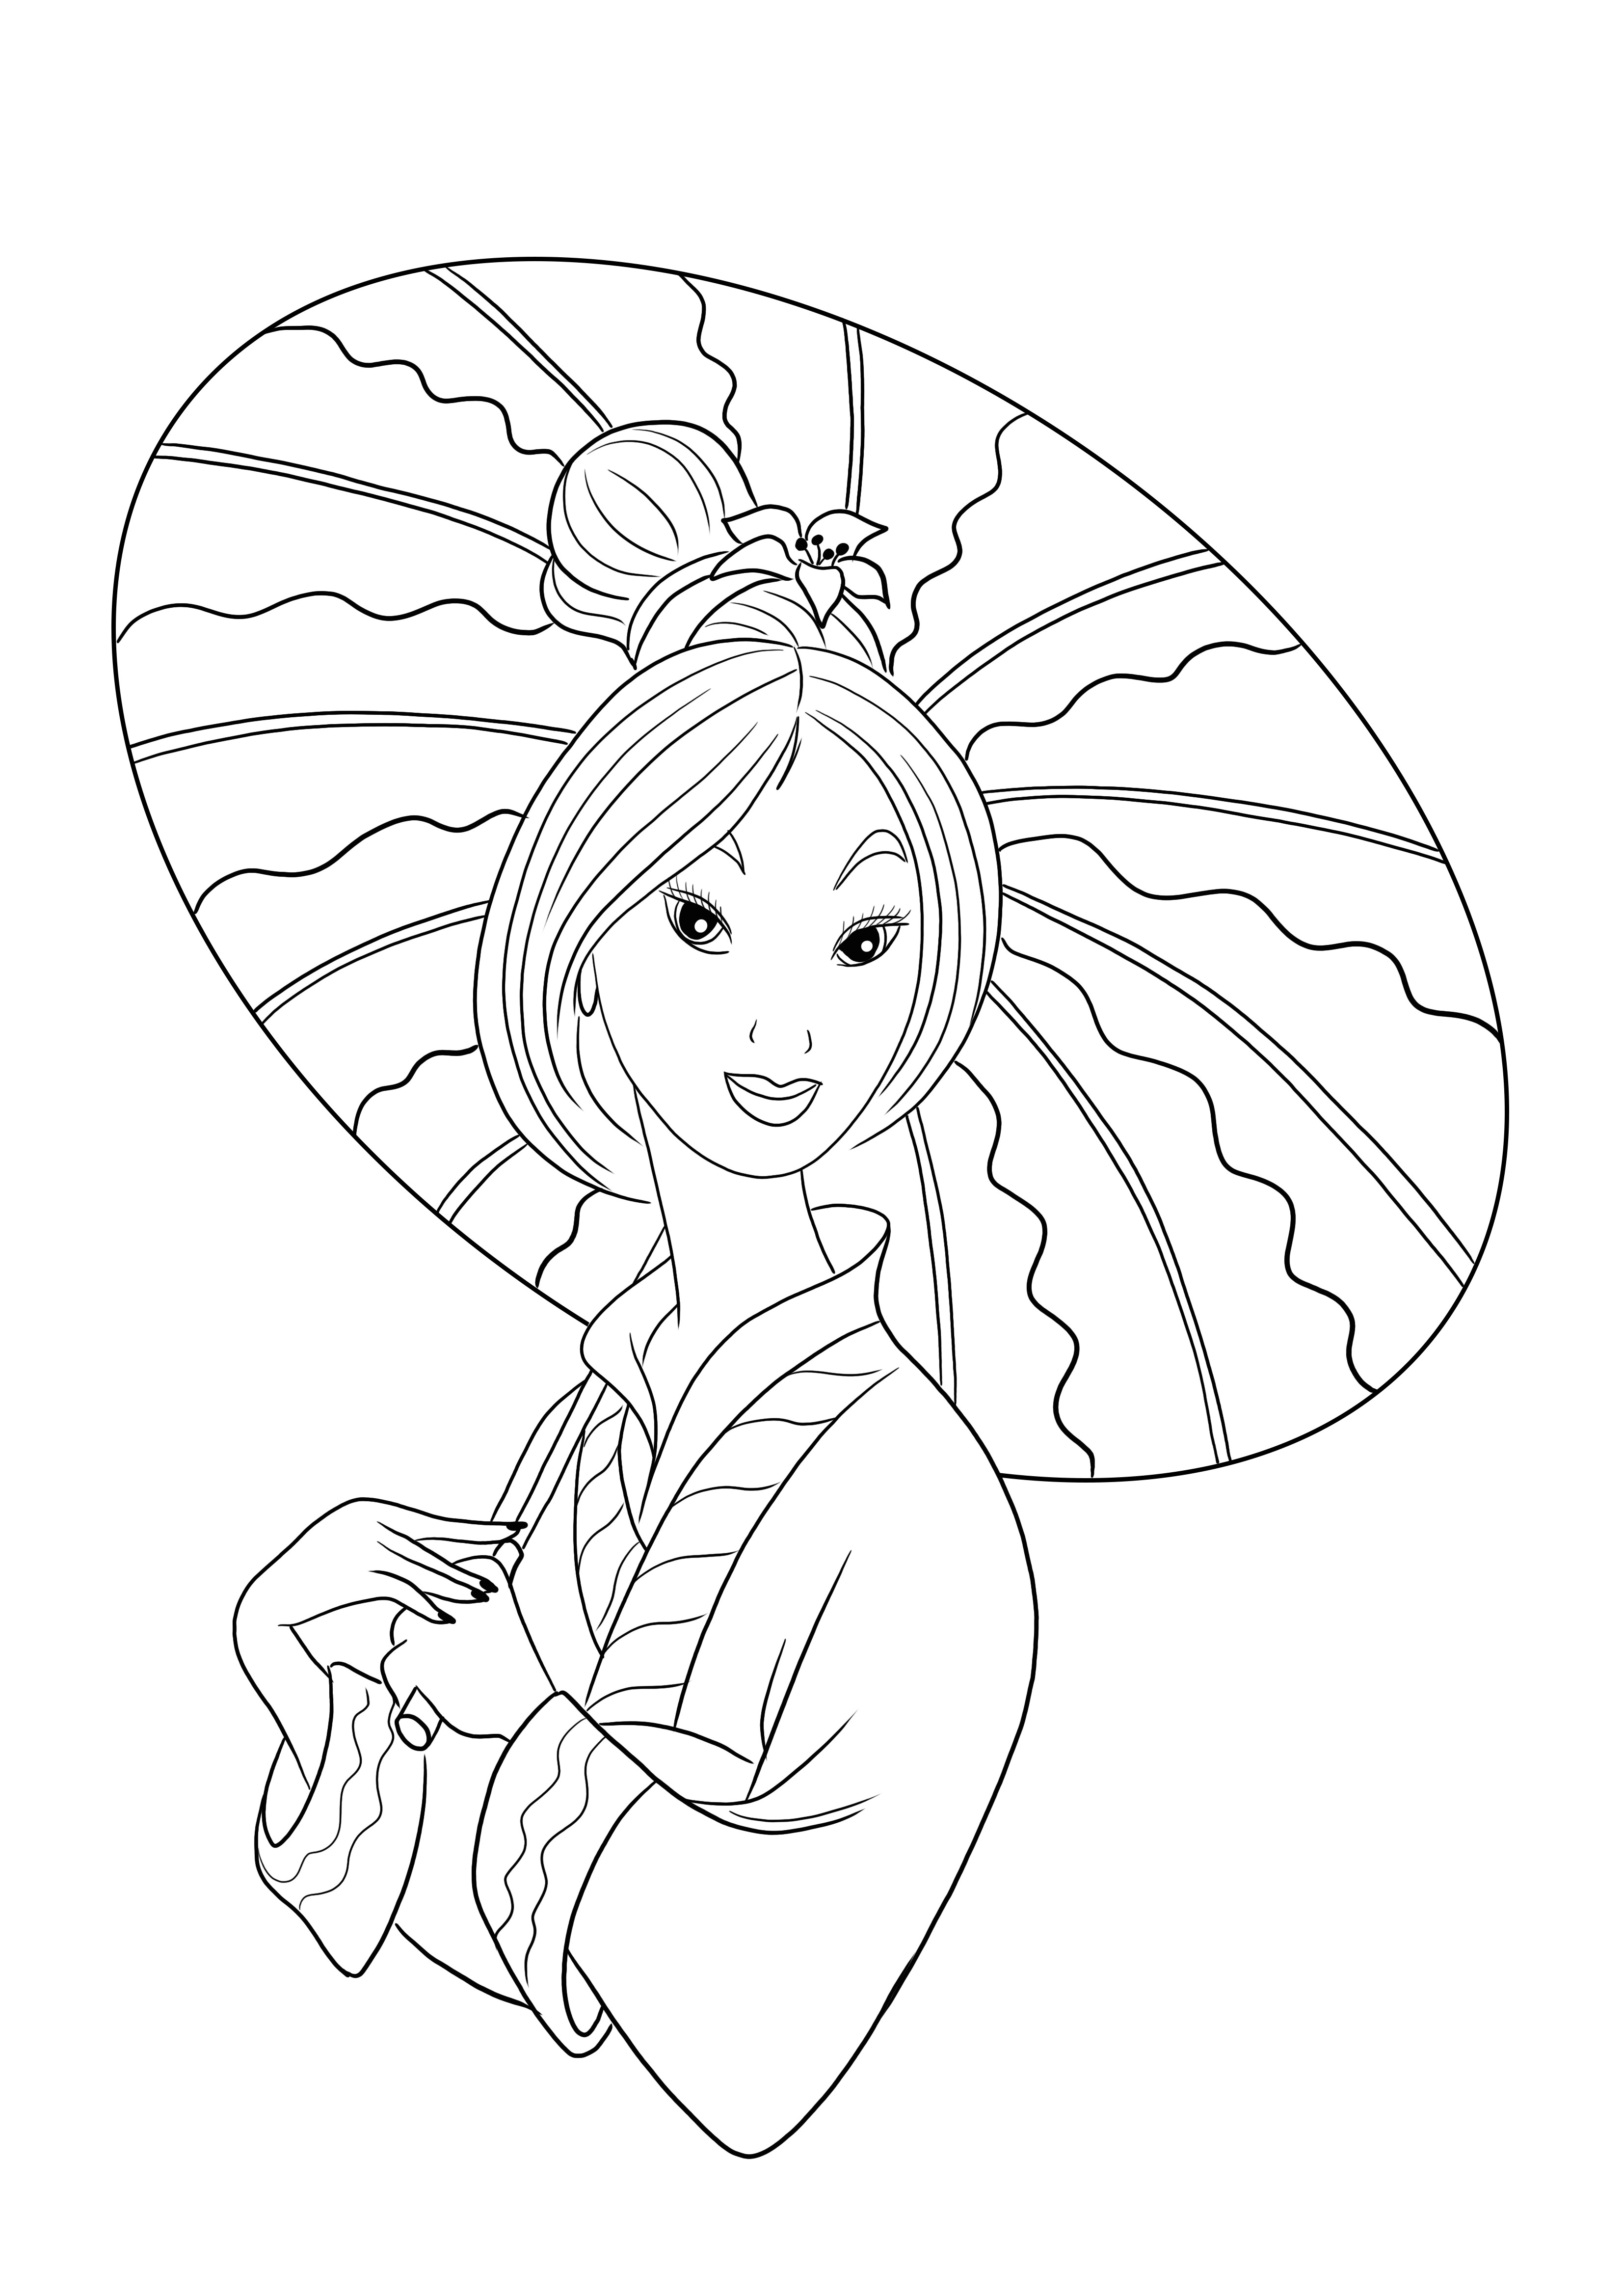 Princesse Mulan gratuite à colorier et à imprimer pour que les enfants s'amusent